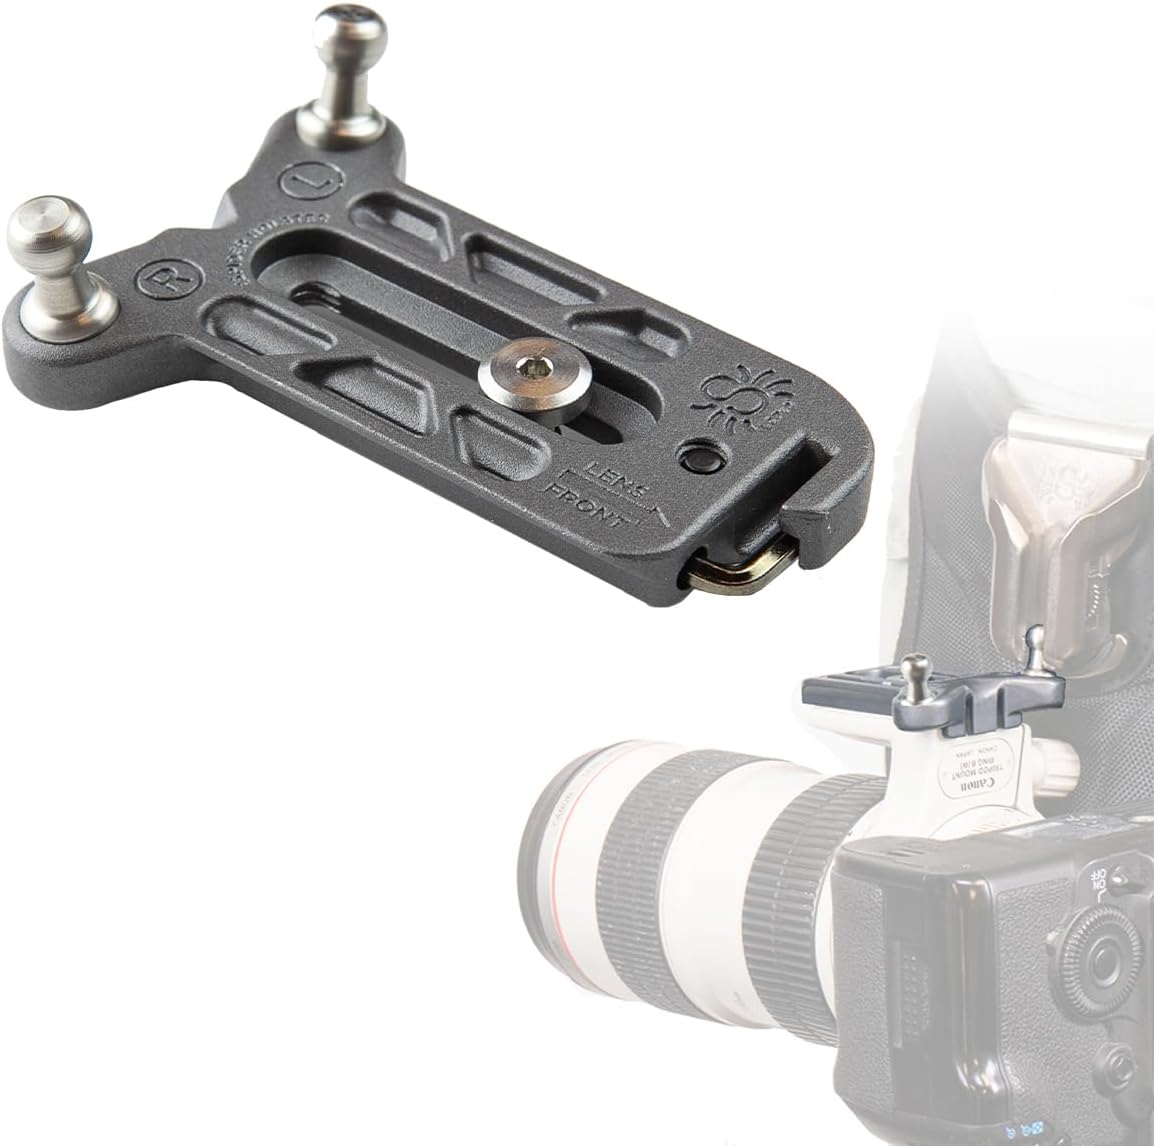 SPIDER HOLSTER SpiderPro Lens Collar Plate v2 左右サイドのスパイダーねじれ防止カメラピンを備えたスパイダーカメラホルスターシステム用 レンズカラーマウントにしっかり取り付け